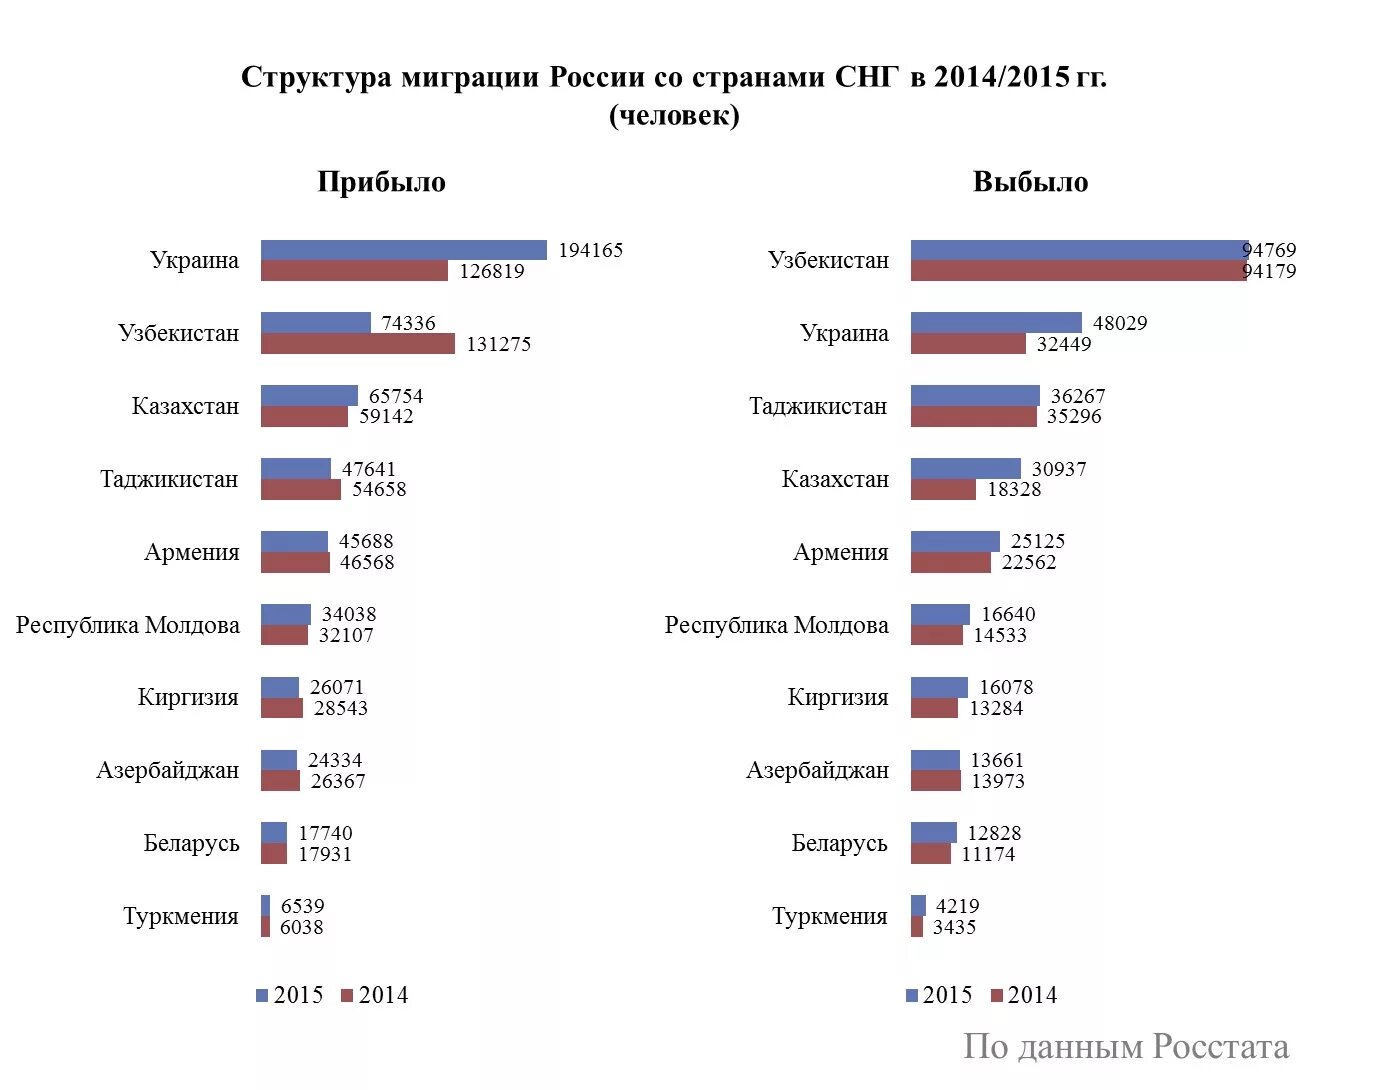 Миграция из России статистика по странам. Миграция из России и в Россию статистика. Структура мигрантов в России. Структура миграции в России.